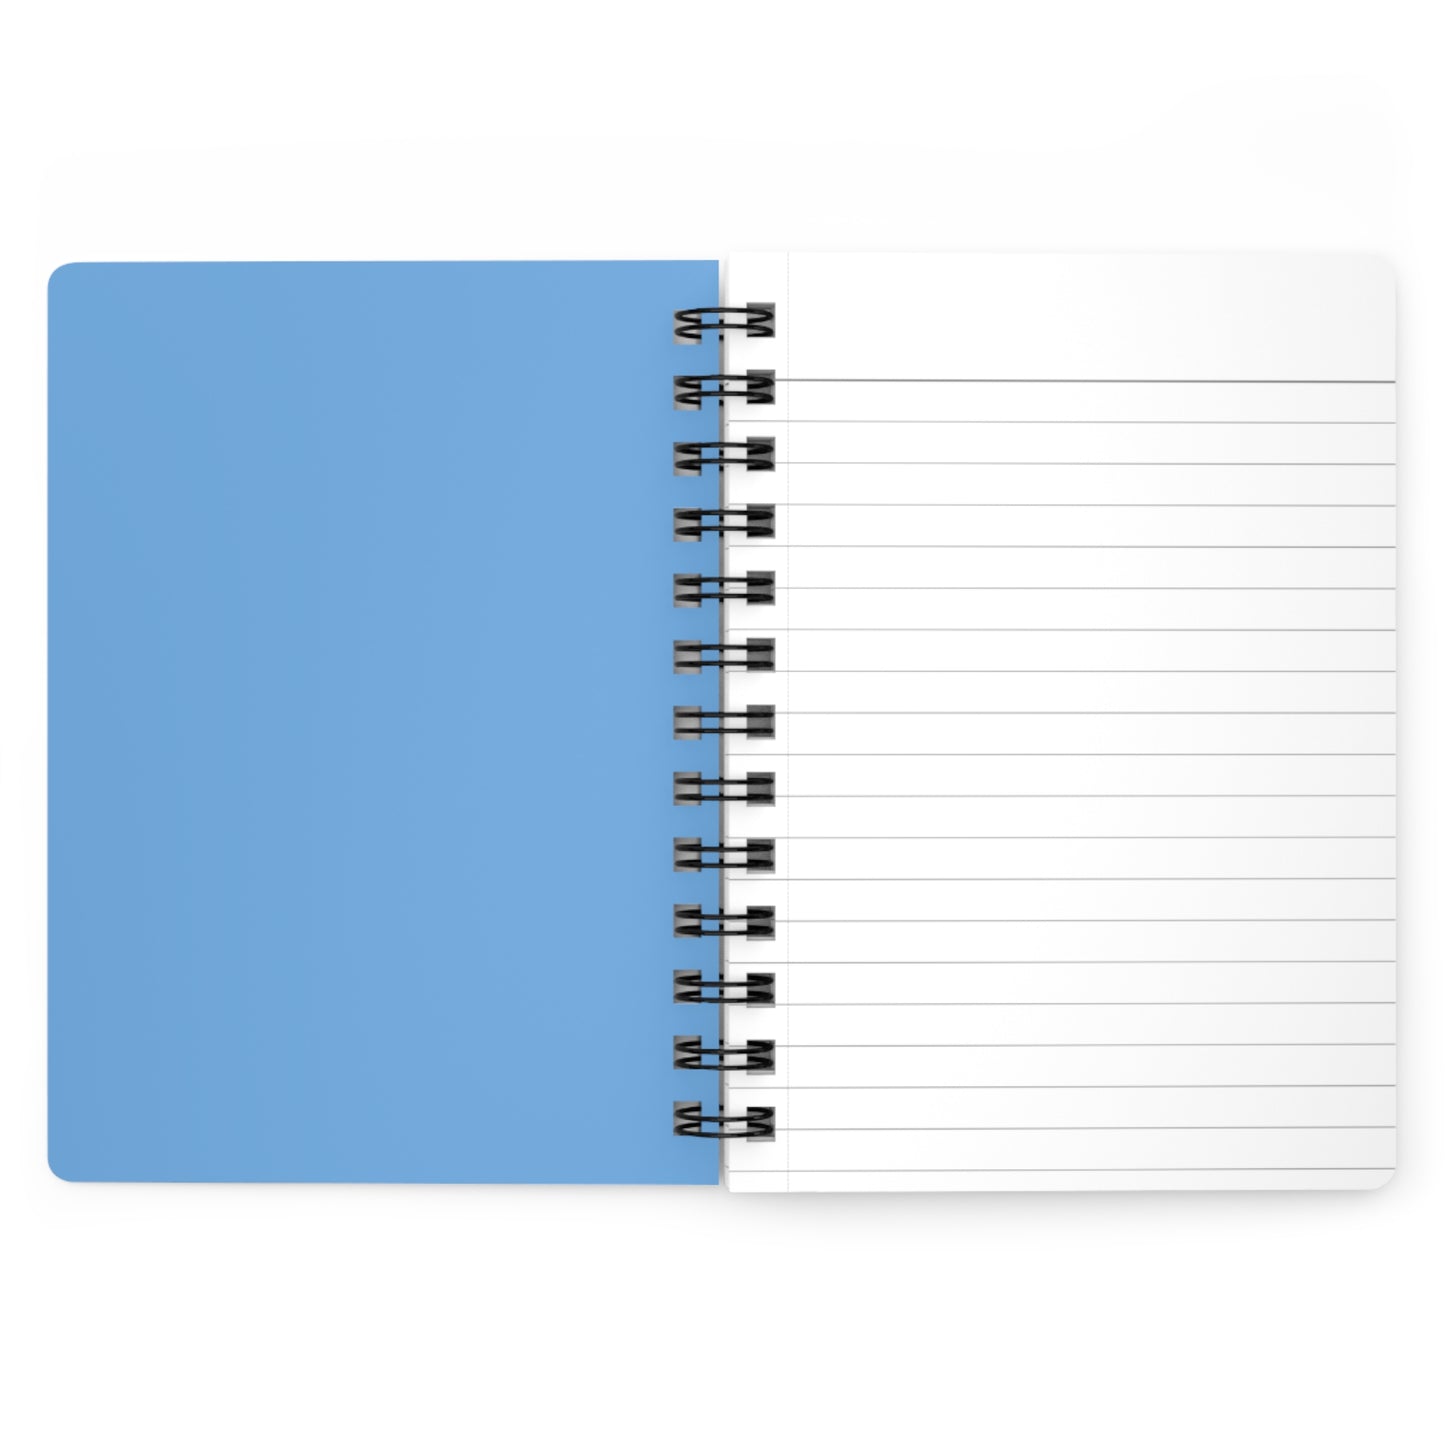 Magical Fruit Spiral Notebook - Blue